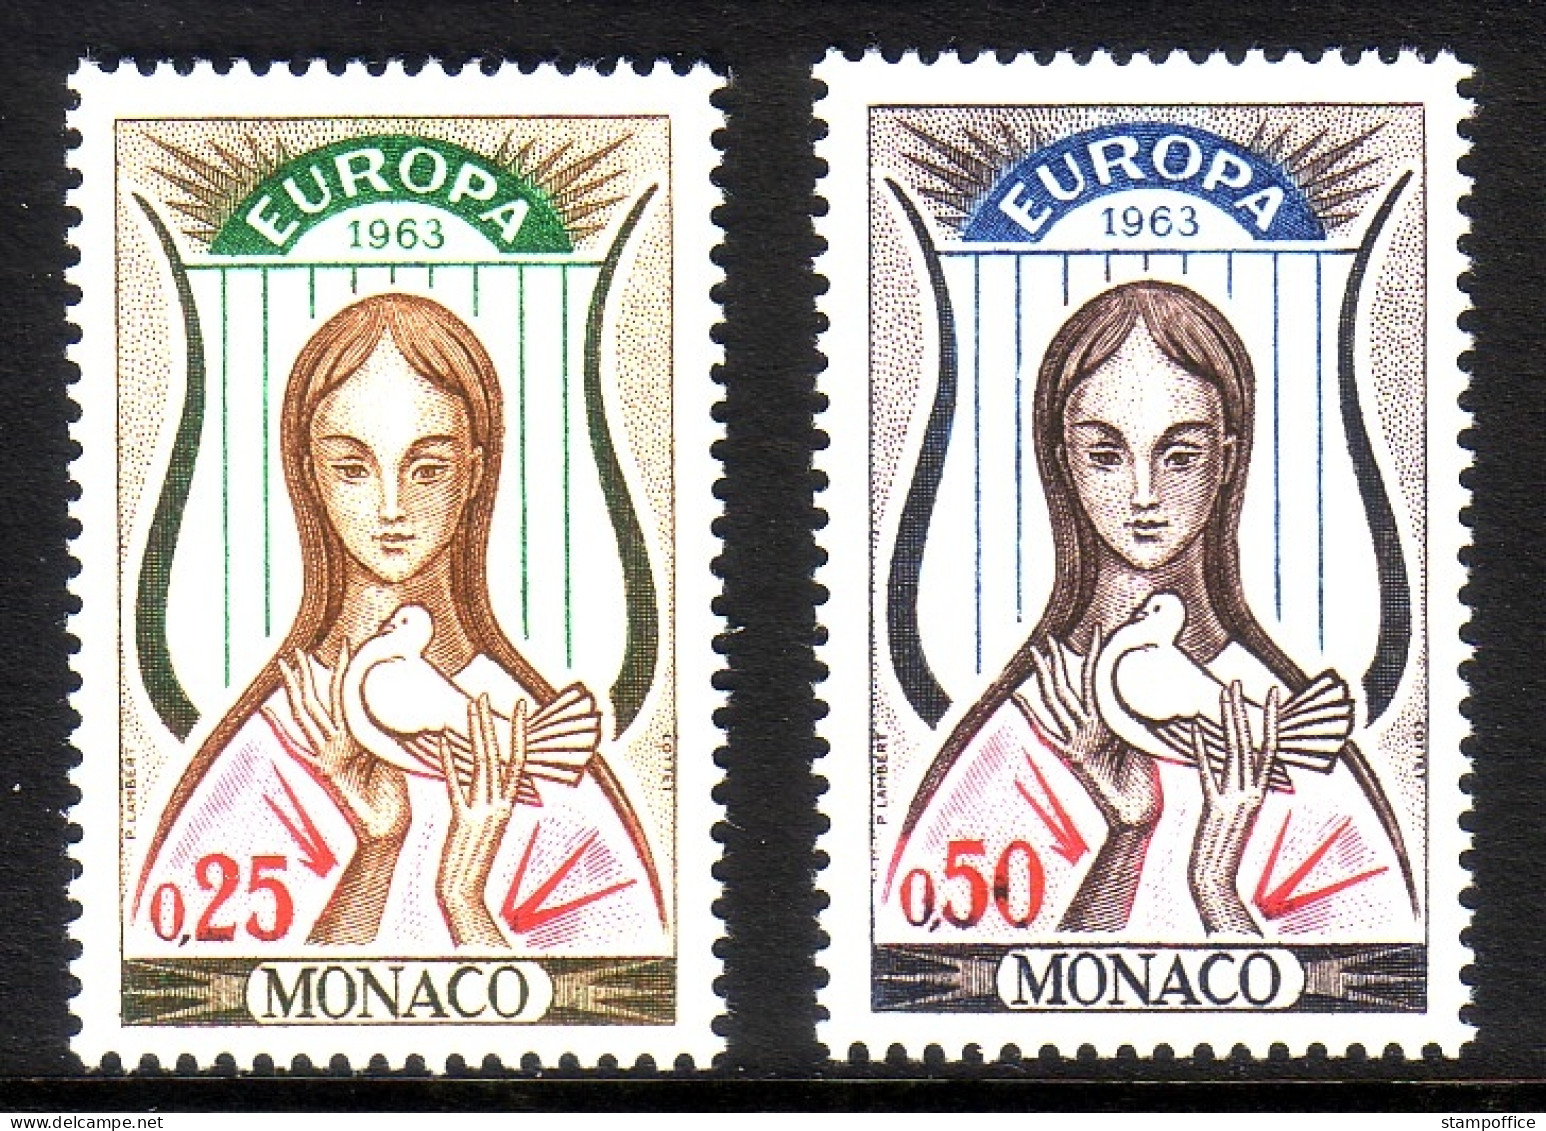 MONACO MI-NR. 742-743 POSTFRISCH(MINT) EUROPA 1963 FRAU MIT TAUBE - 1963